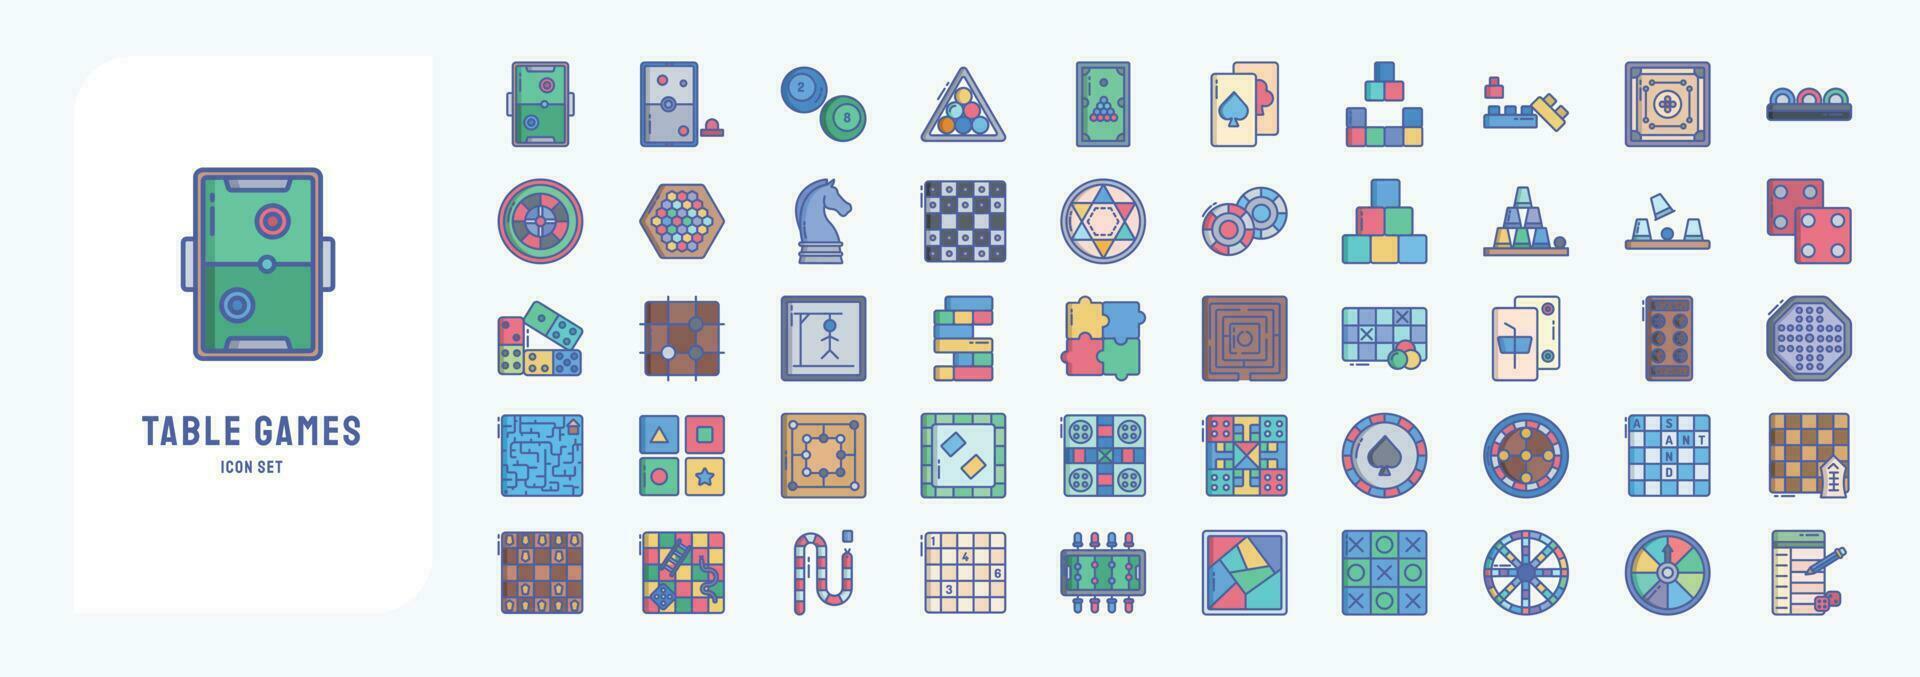 Sammlung von Symbole verbunden zu Tabelle Spiele, einschließlich Symbole mögen Luft hokey, Schach, Kasino Chips, und Mehr vektor